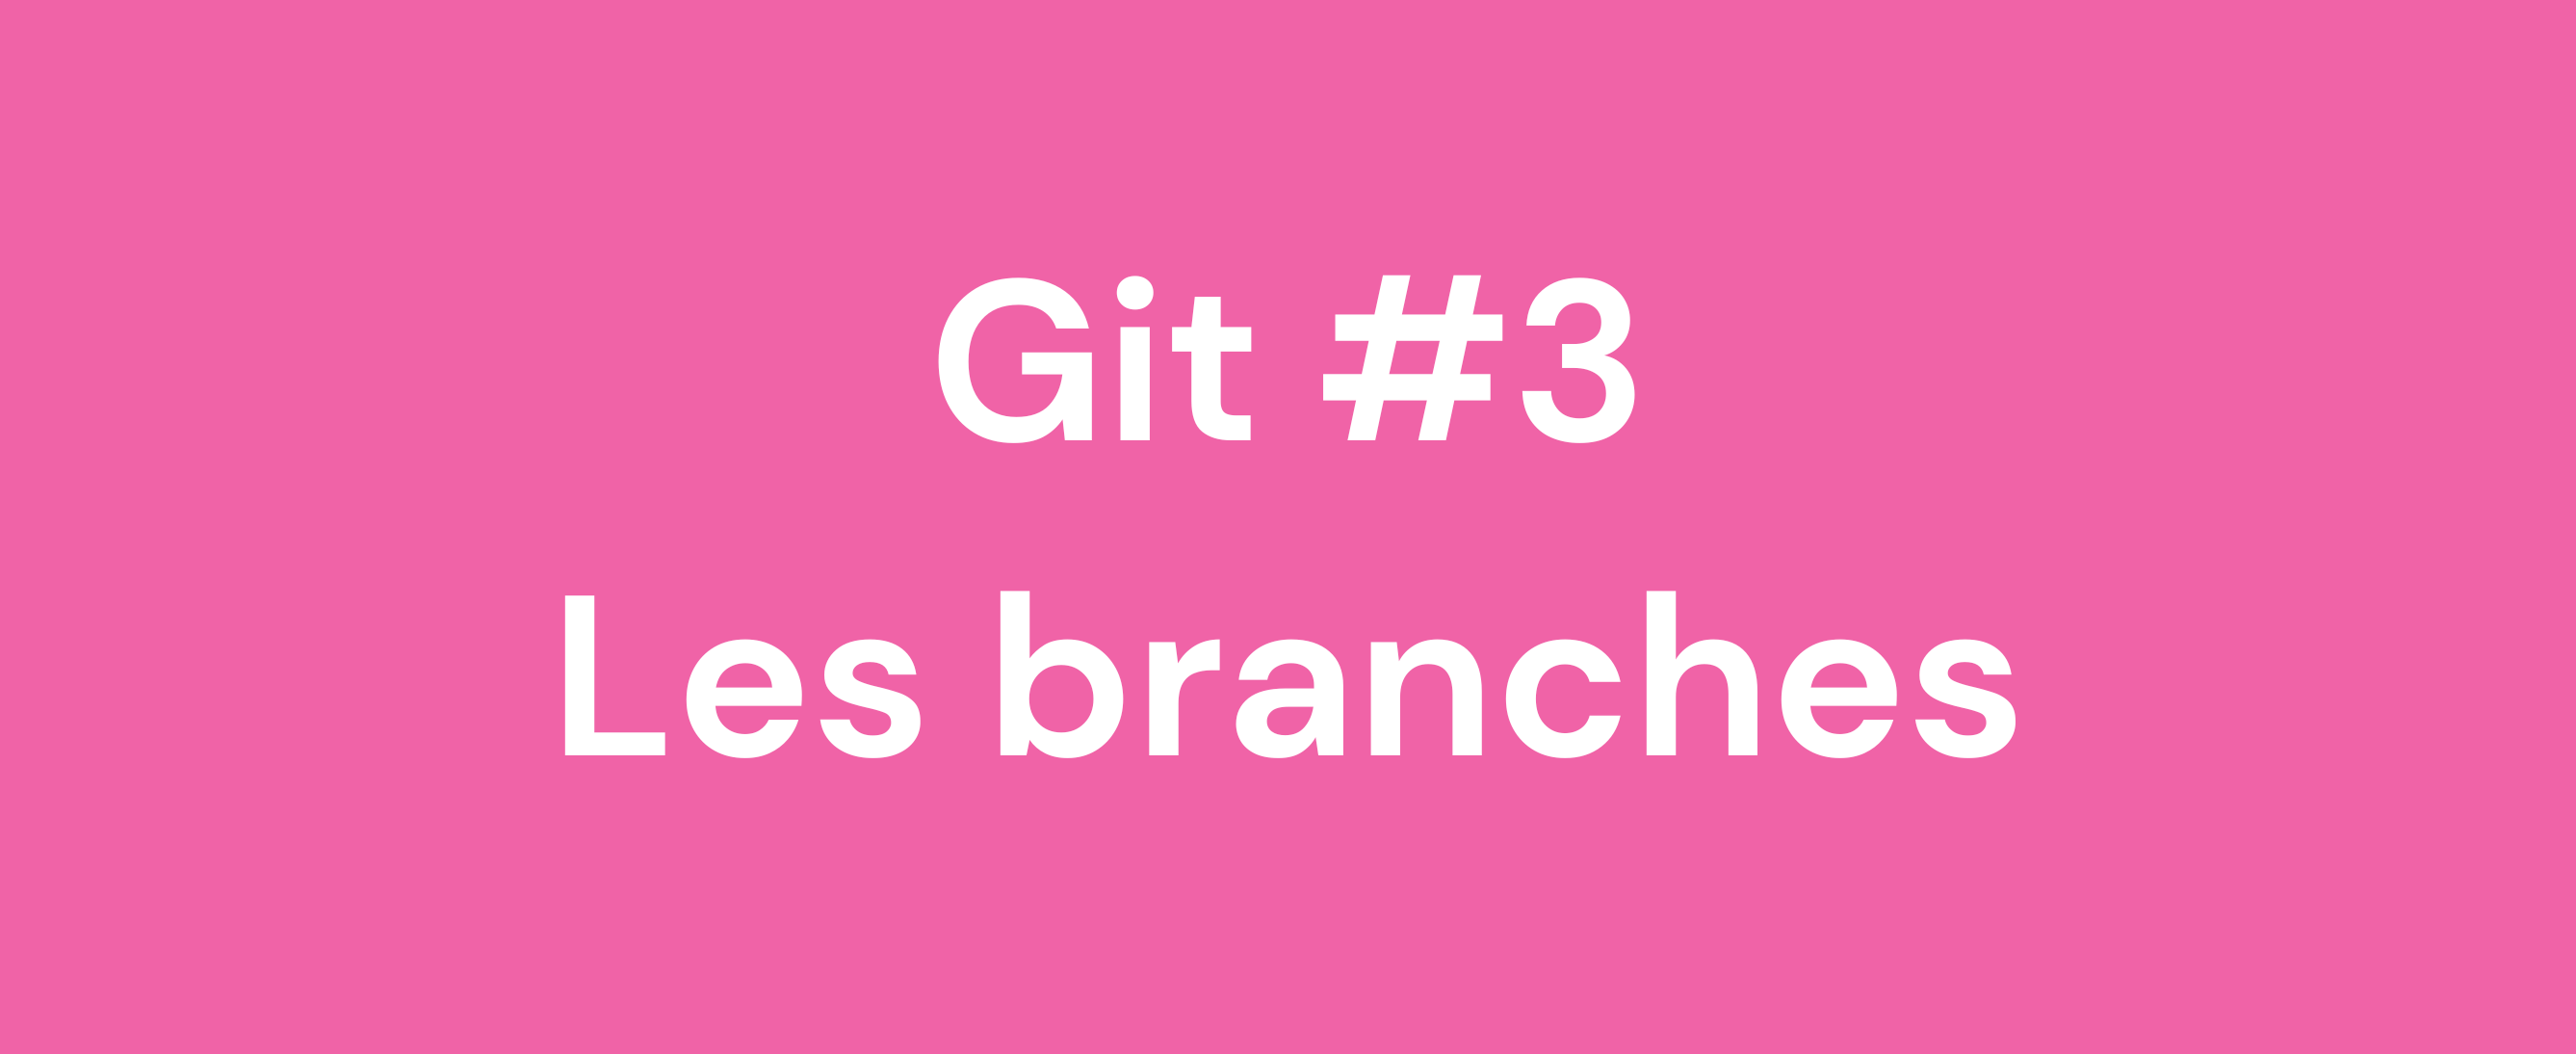 Git Peaks #3 Les branches